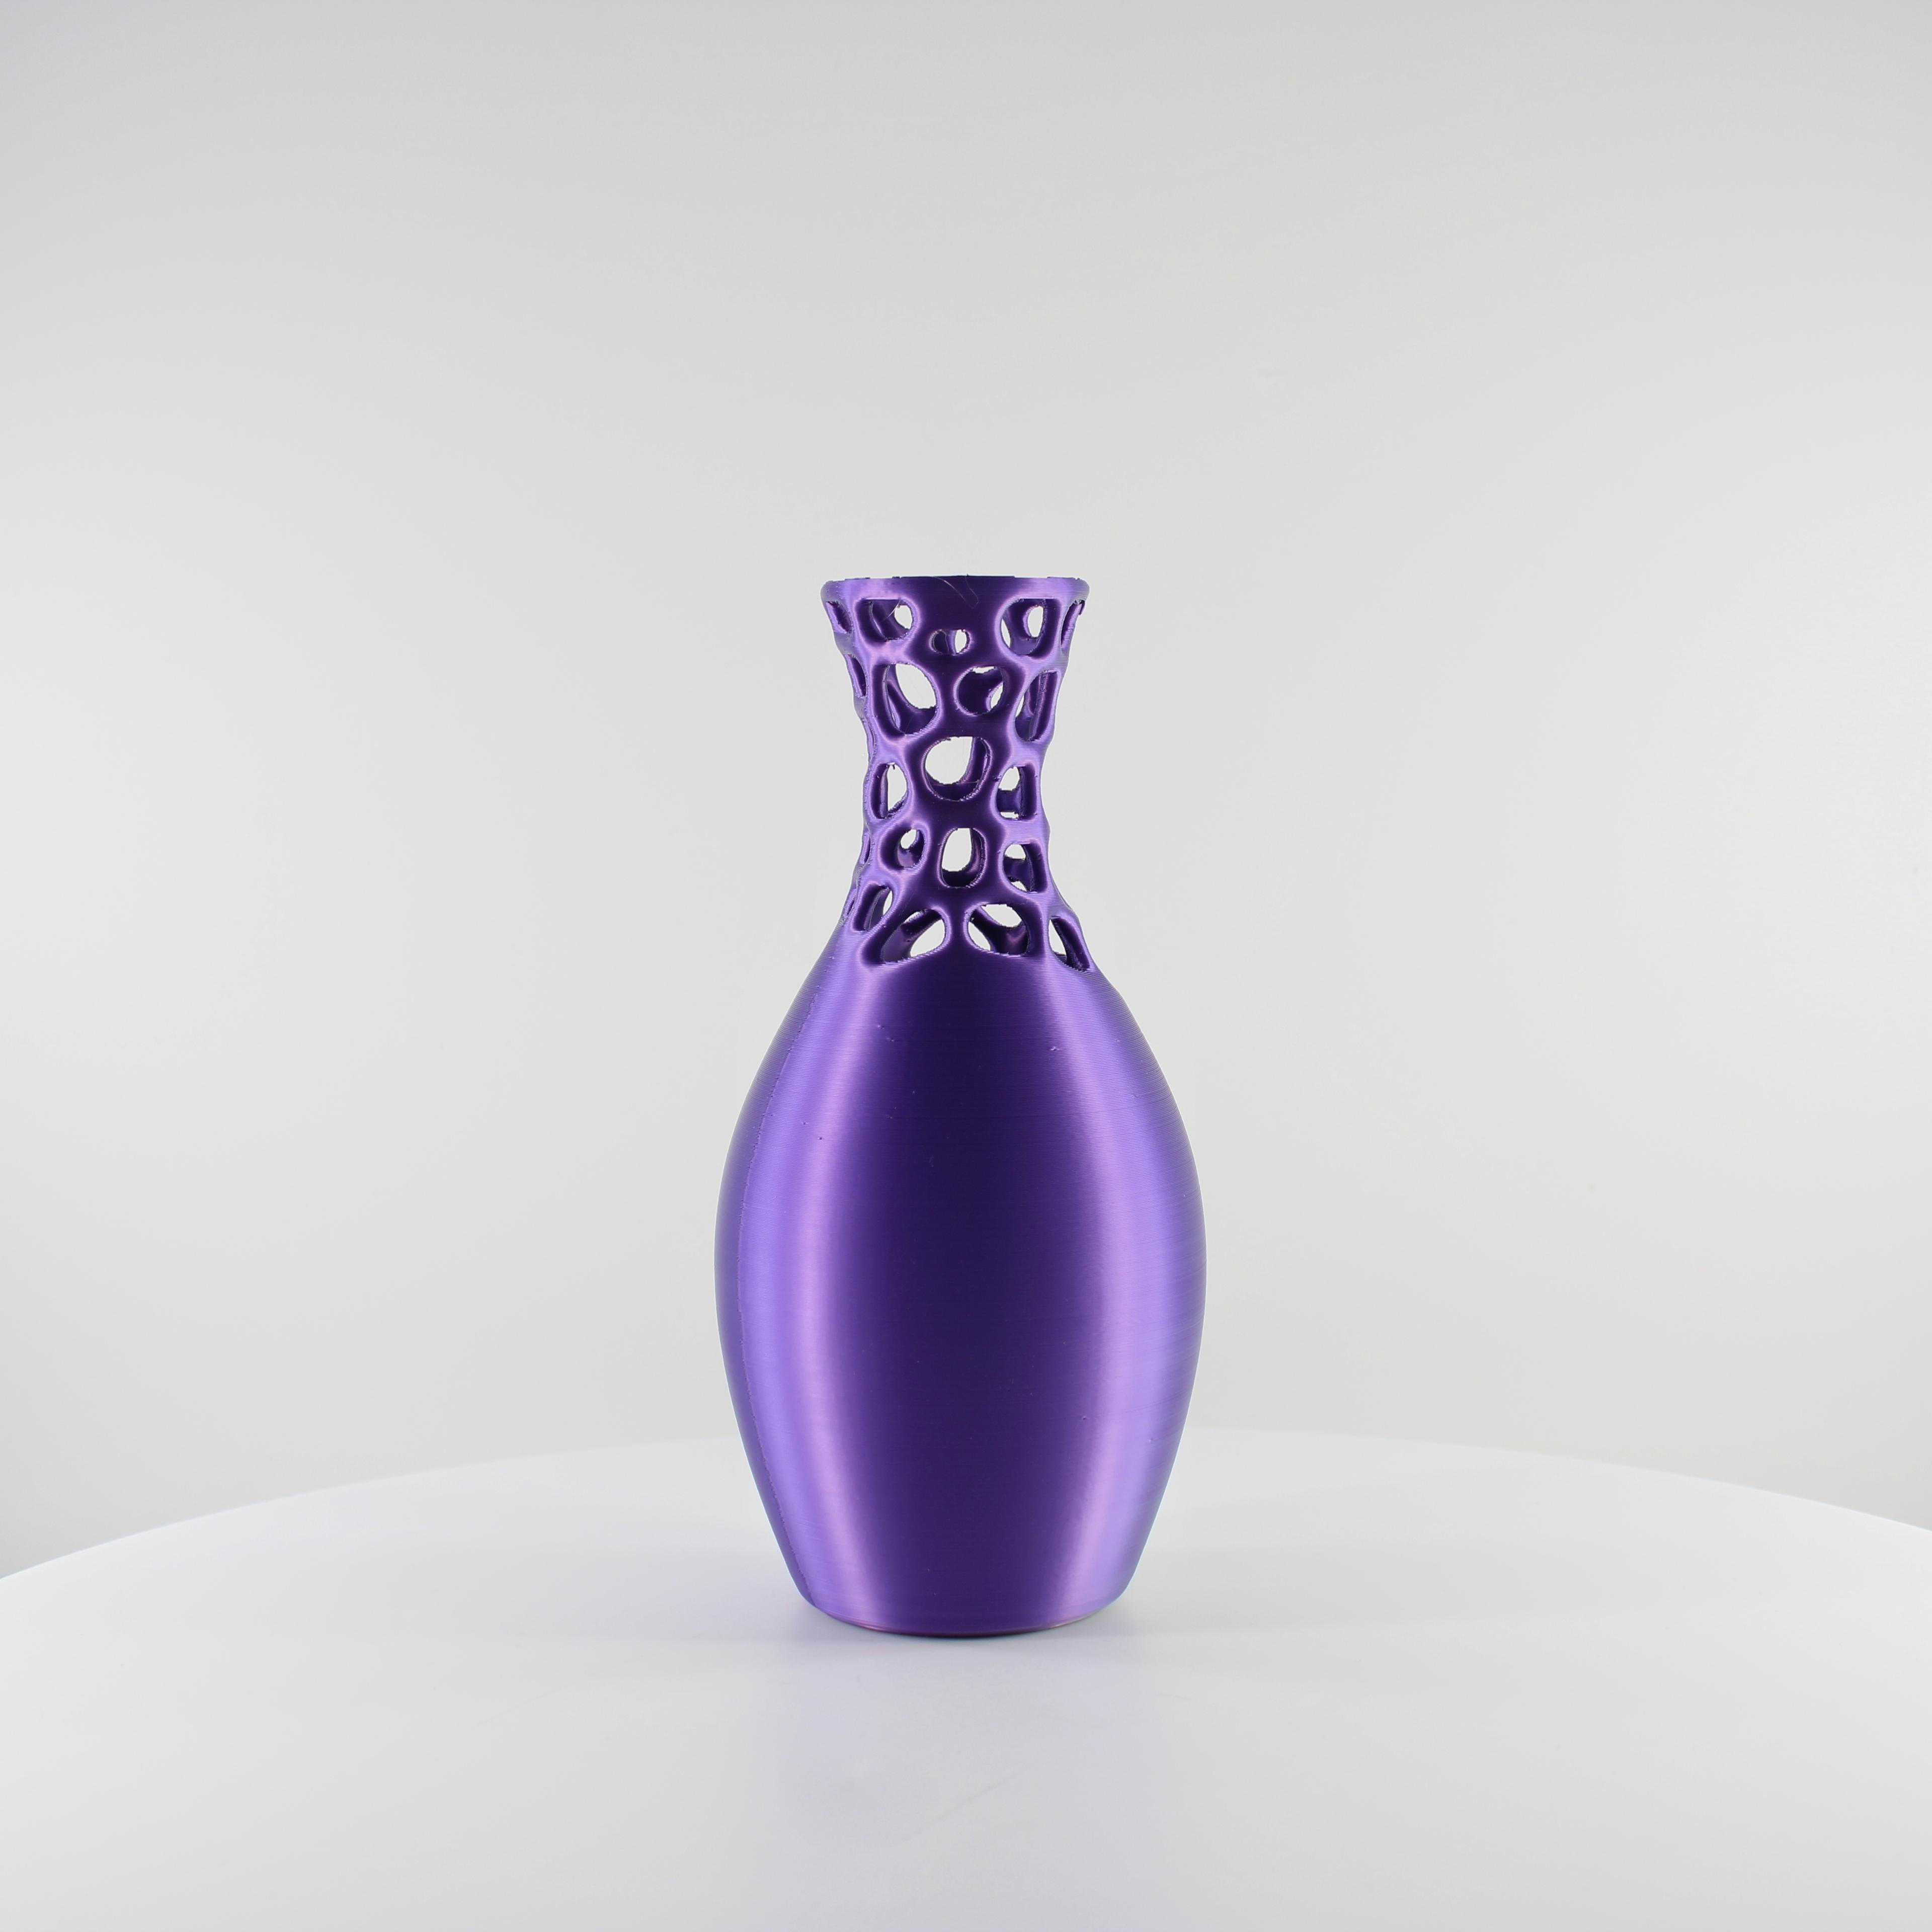 Voronoi Vase by Slimprint.stl 3d model